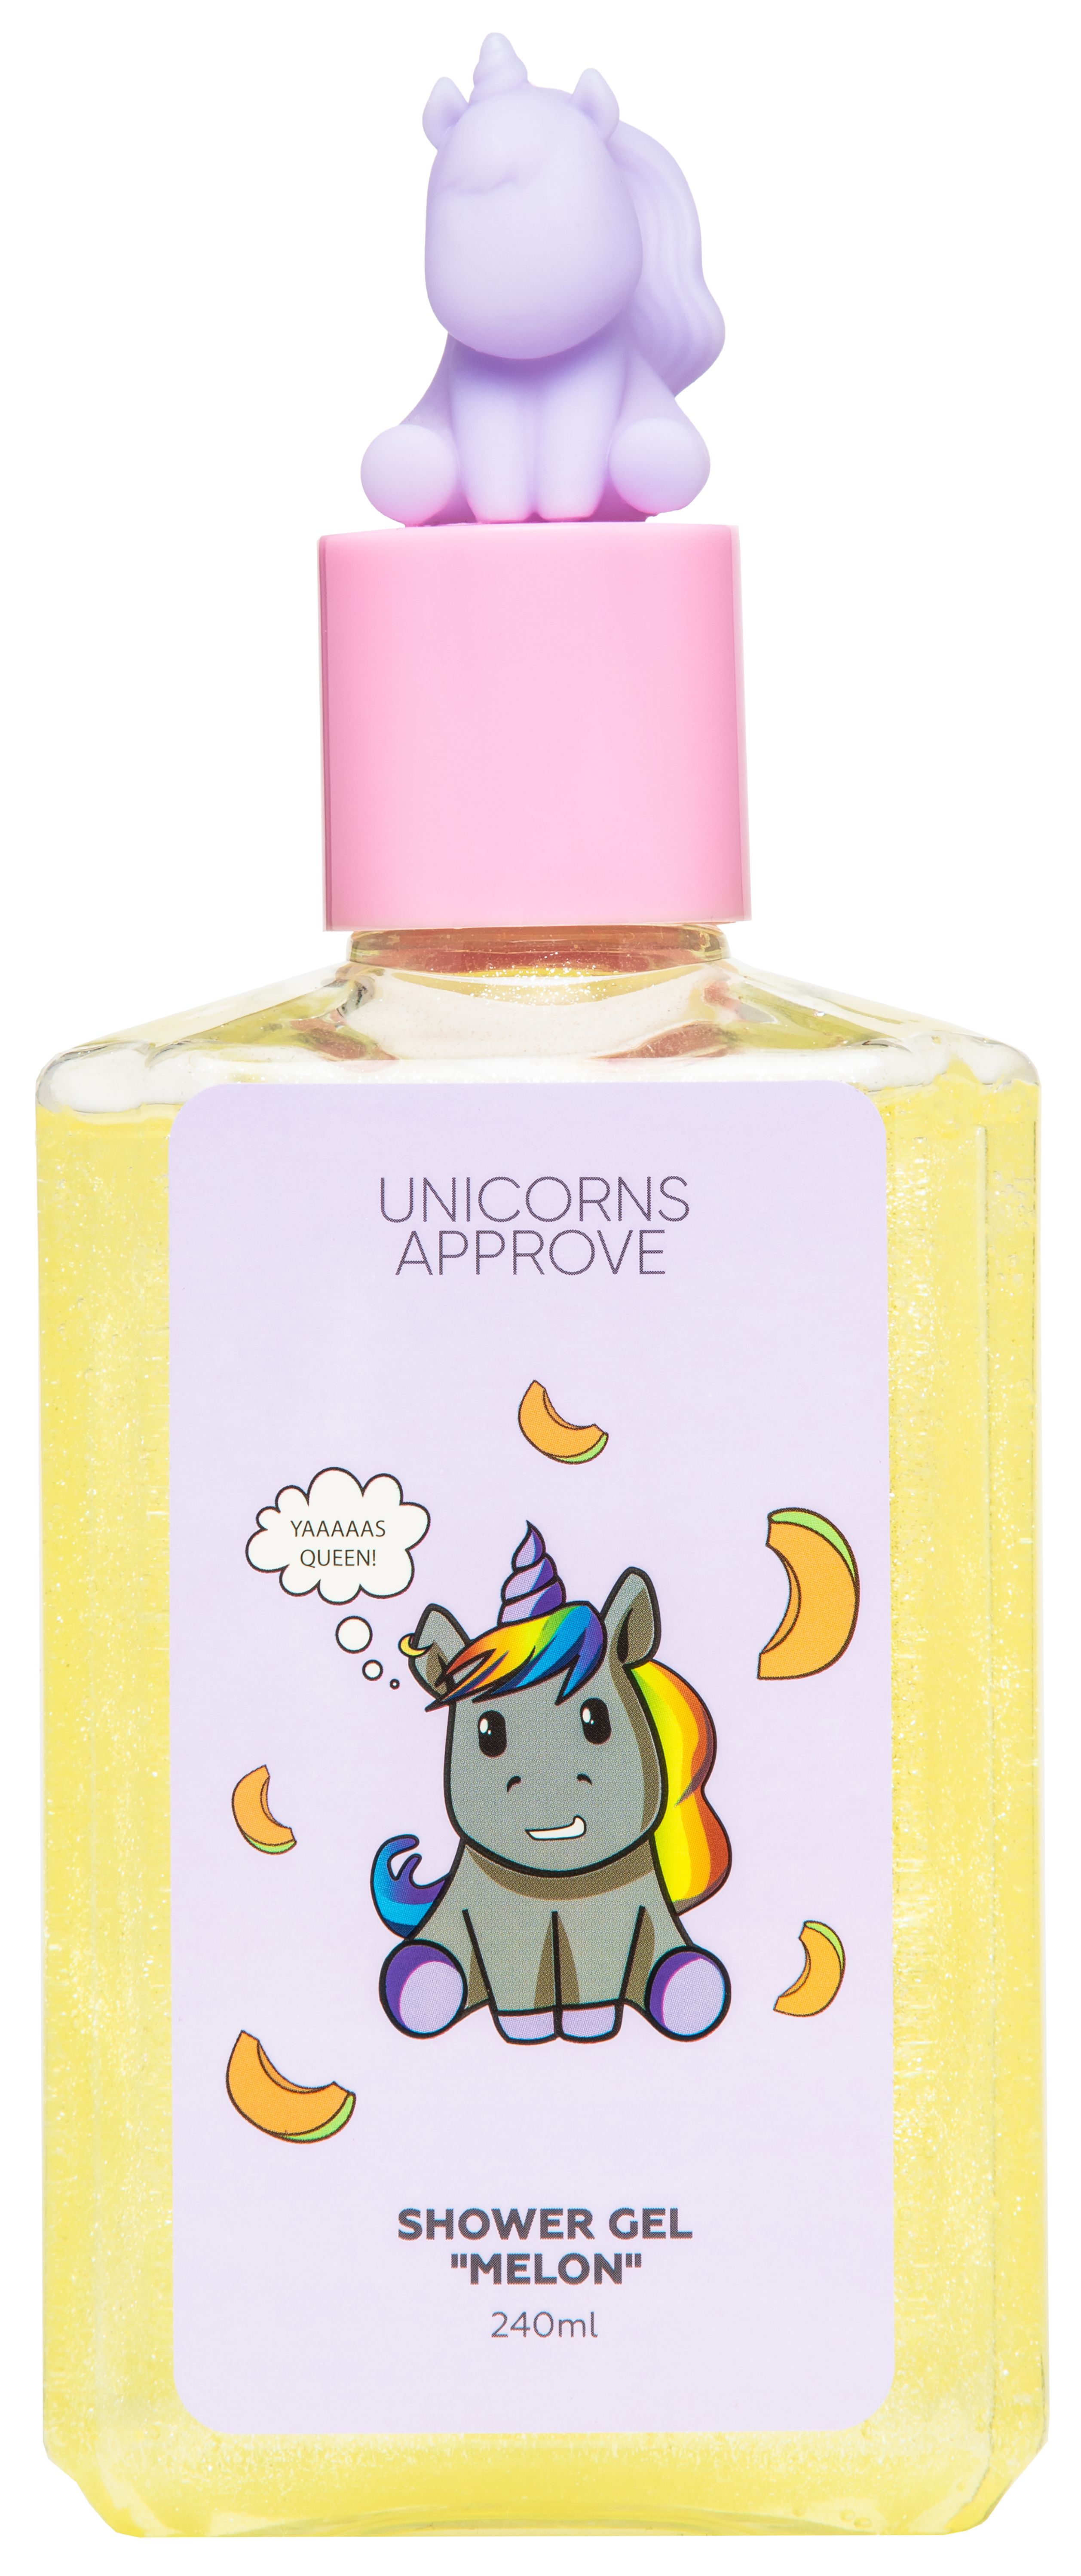 Unicorns approve гель для душа. Unicorns approve шампунь. Детская косметика с единорогом из летуаль. Гель для душа с единорогом.